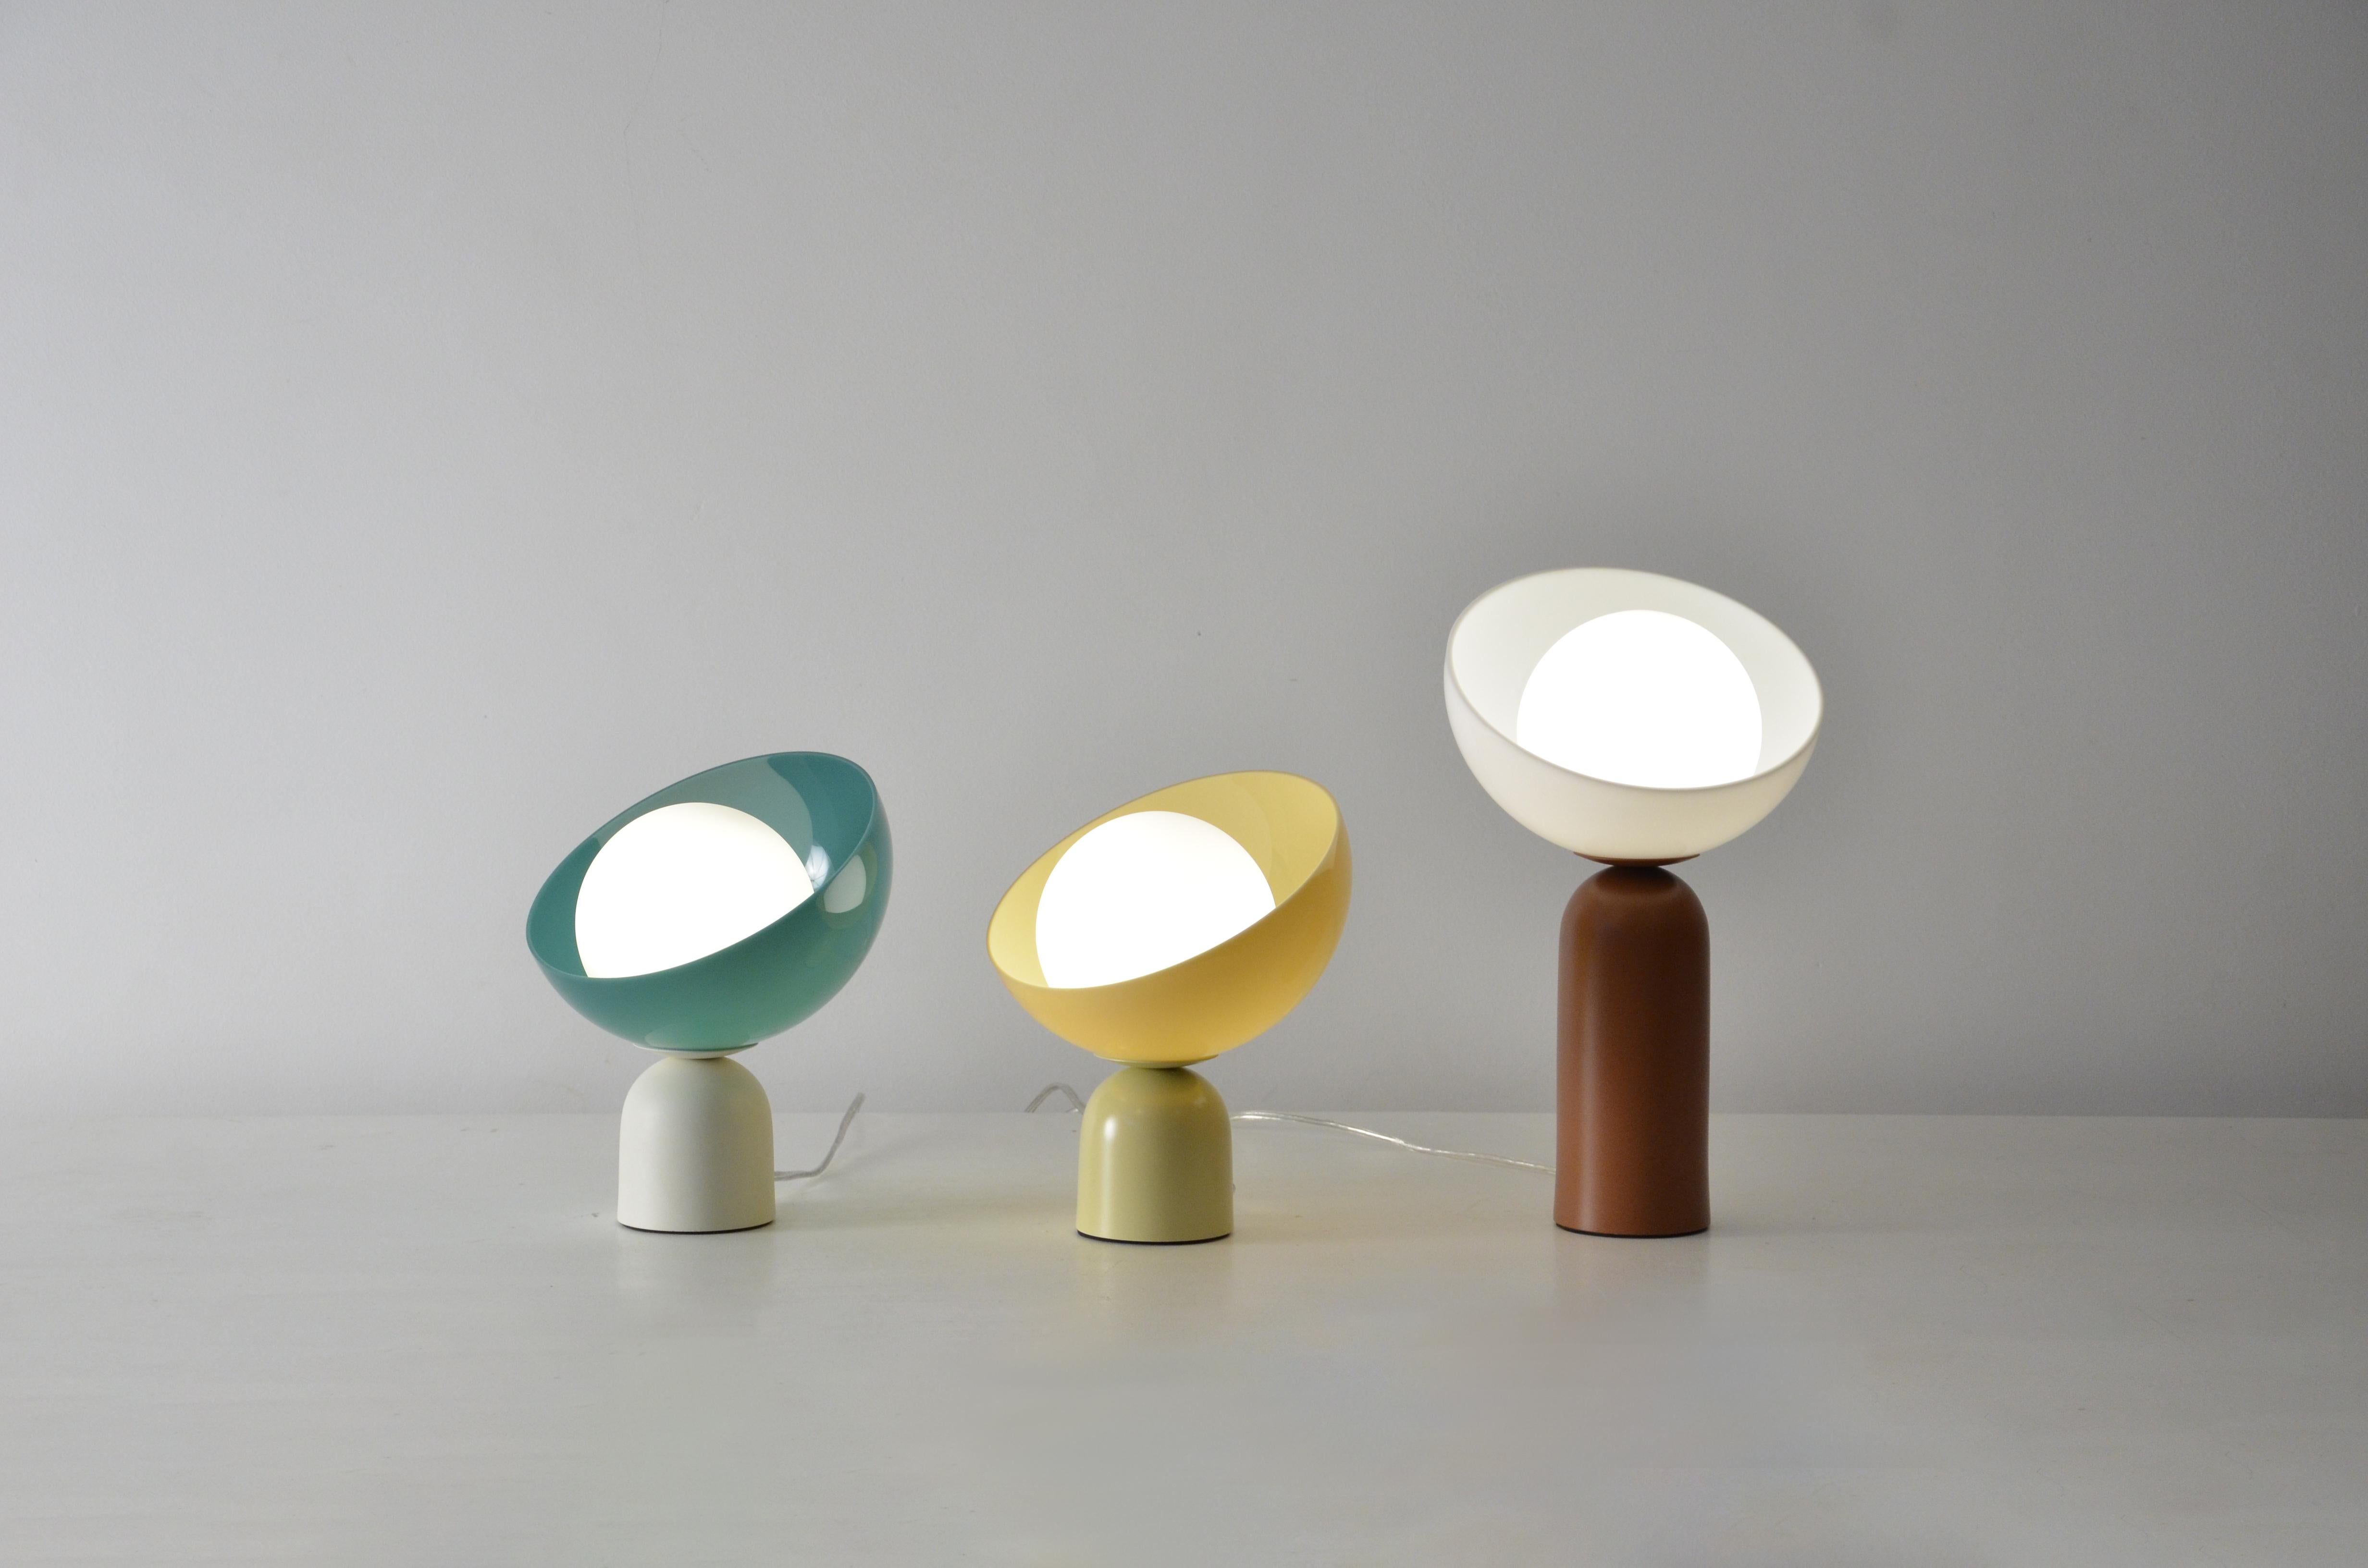 Cette lampe de table s'appelle Lichia. 
Le produit se compose d'un diffuseur acrylique rond et d'une base en aluminium.
La base est en aluminium peint, et peut être dans n'importe quelle couleur de la palette affichée dans les photos (blanc, ivoire,